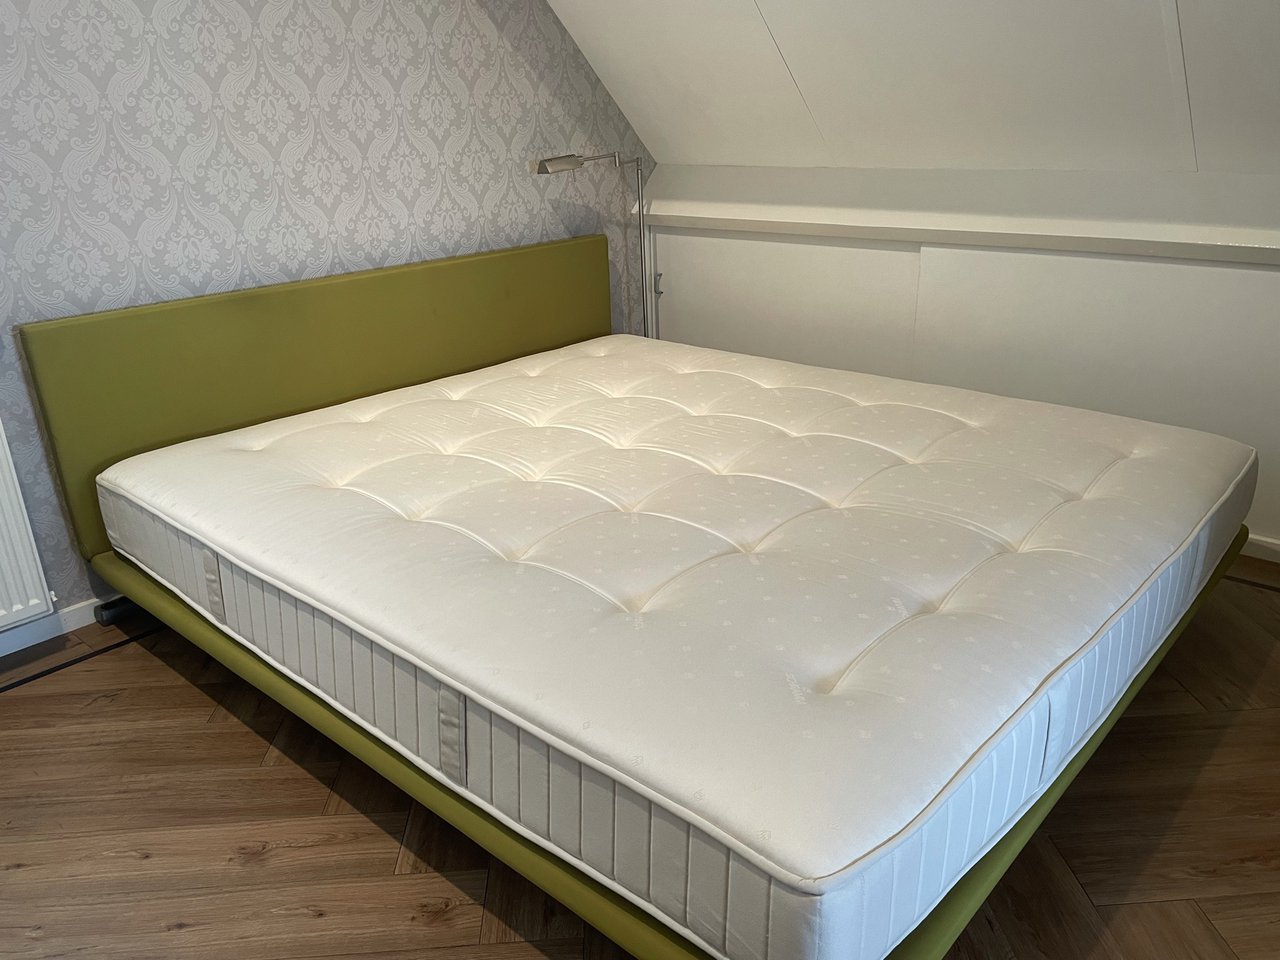 Image 4 of Zanotta by De Pas, D'Urbino and Lomazzi Double bed Milano designed by De Pas, D'Urbino and Lomazzi